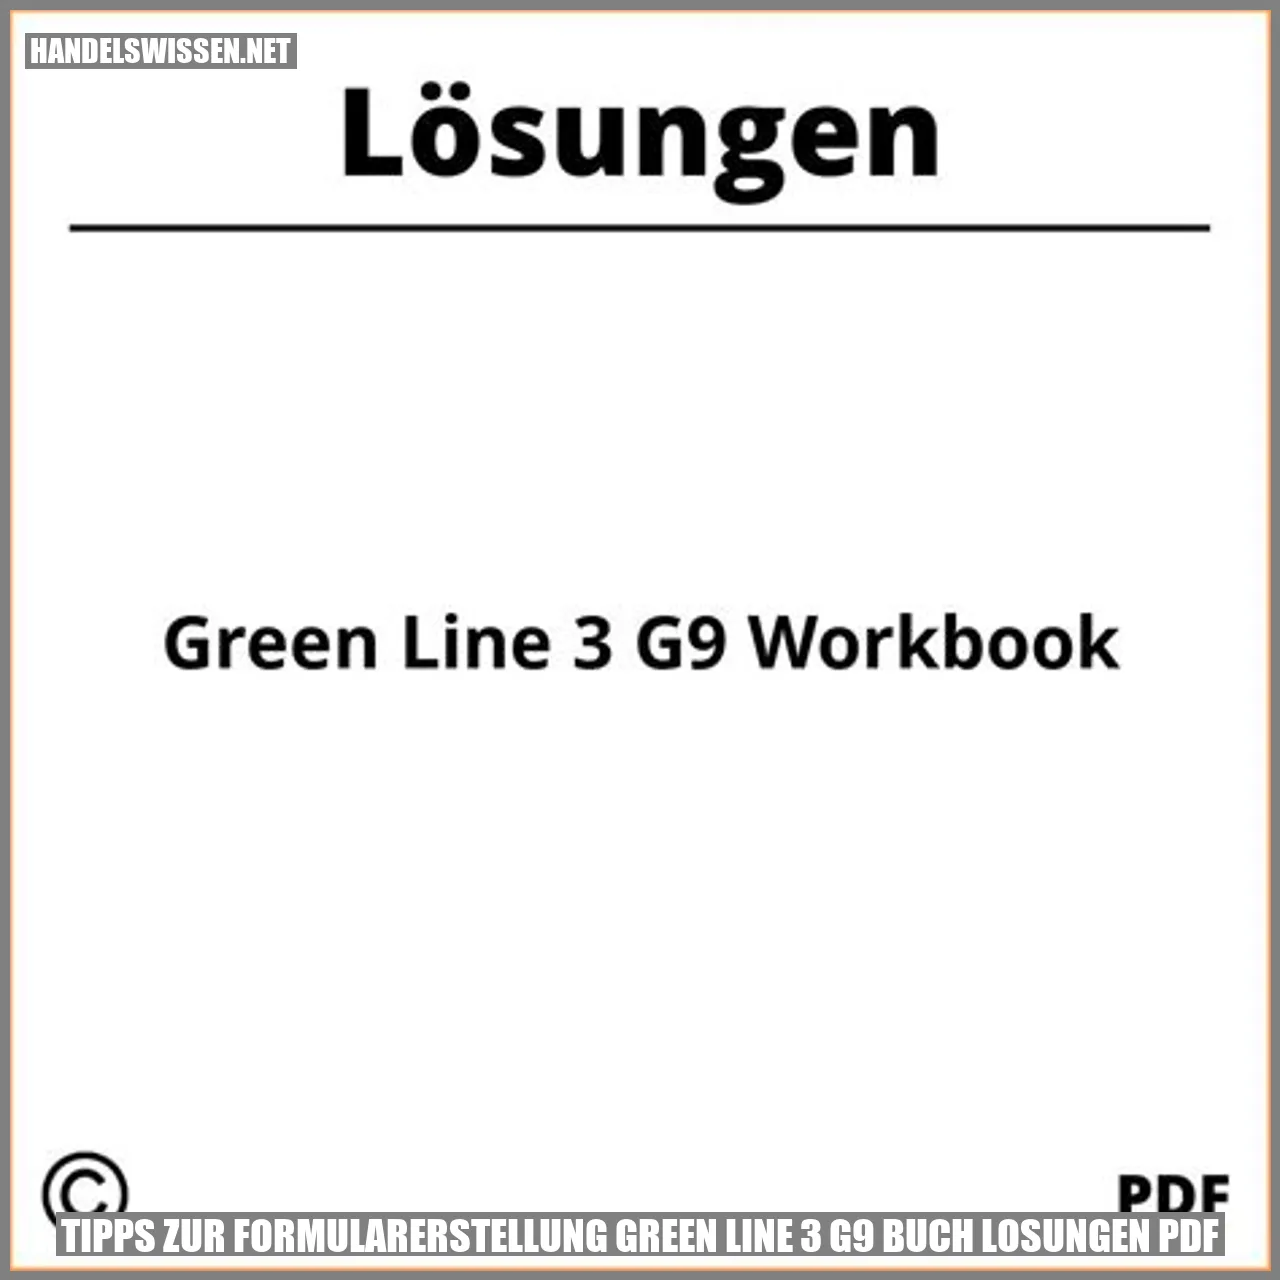 Tipps zur Formularerstellung green line 3 g9 buch losungen pdf